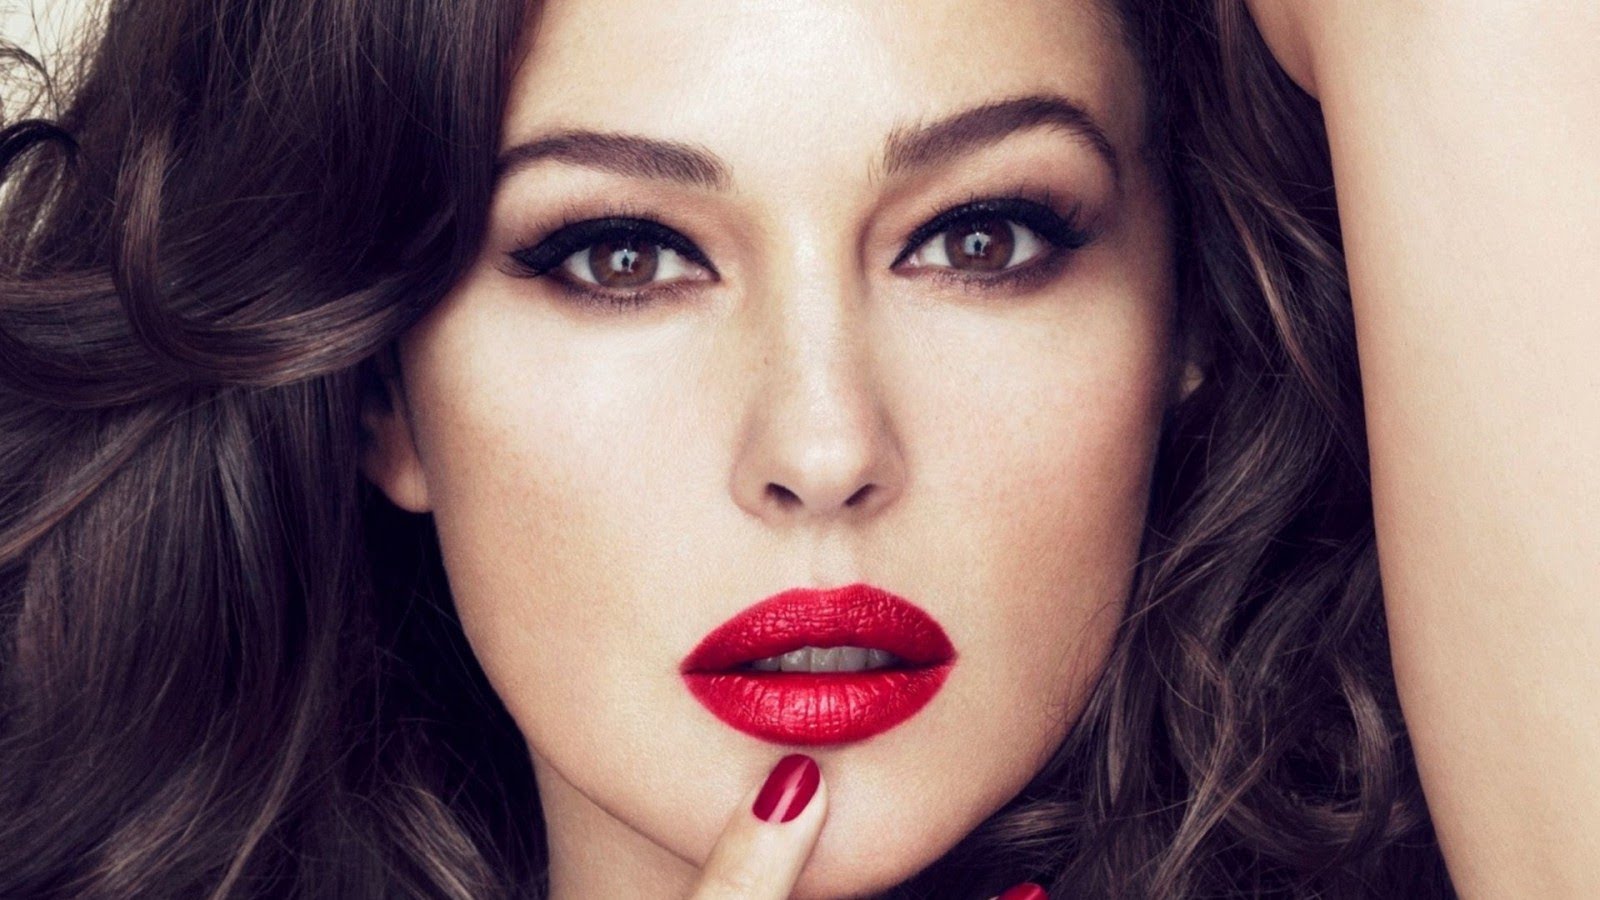 Monica bellucci hot lipstick